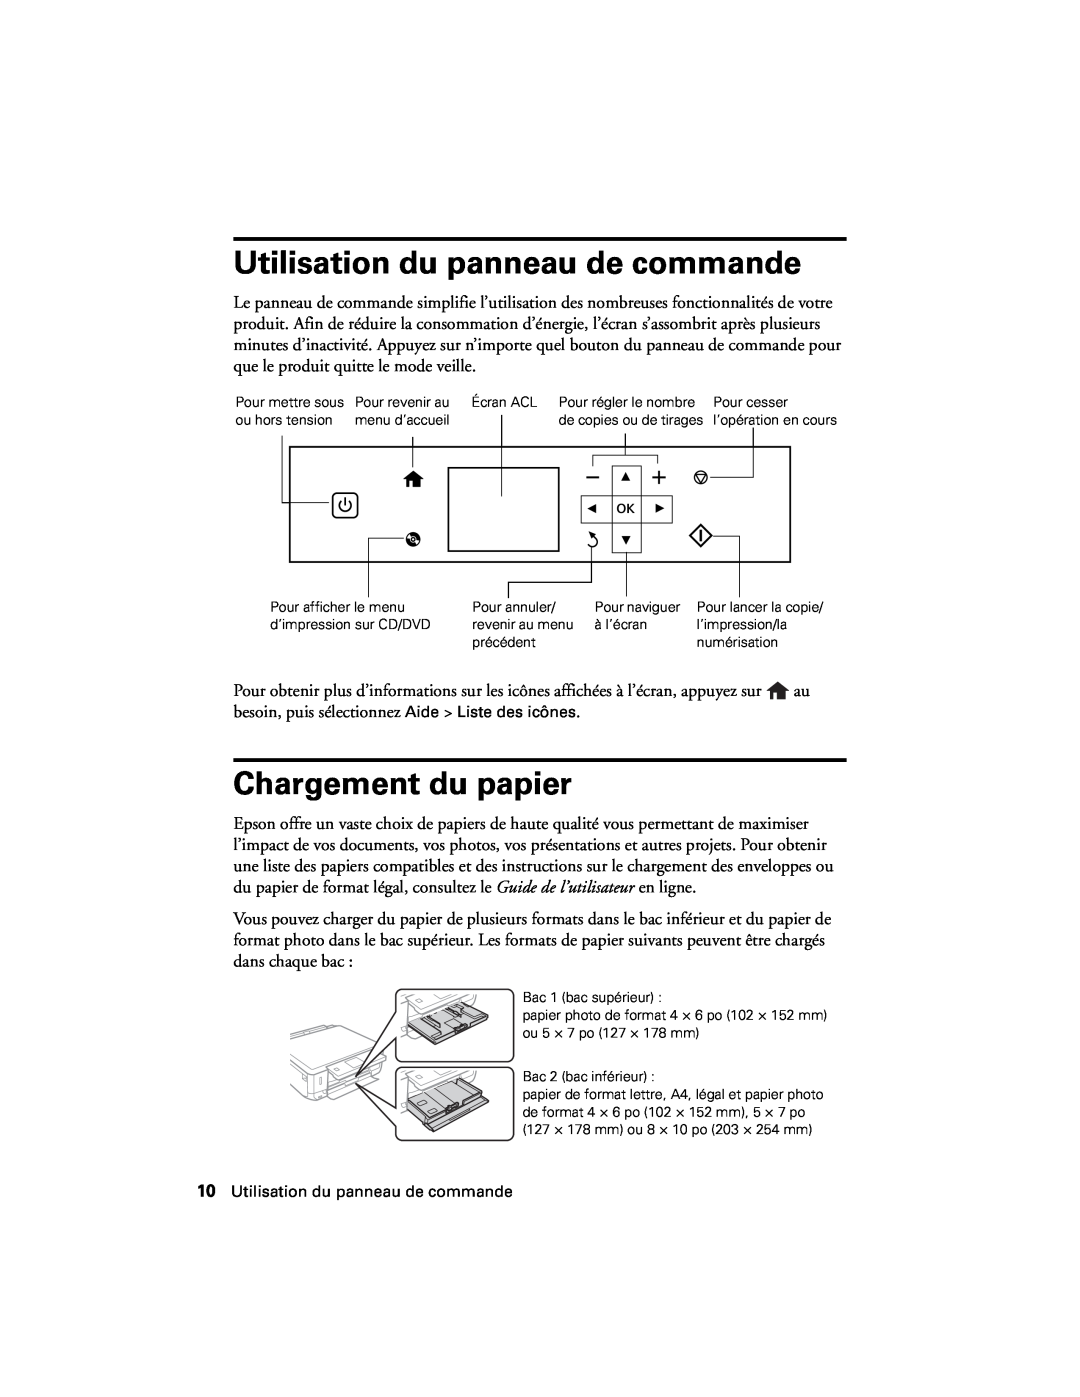 Epson XP-620 manual Utilisation du panneau de commande, Chargement du papier 